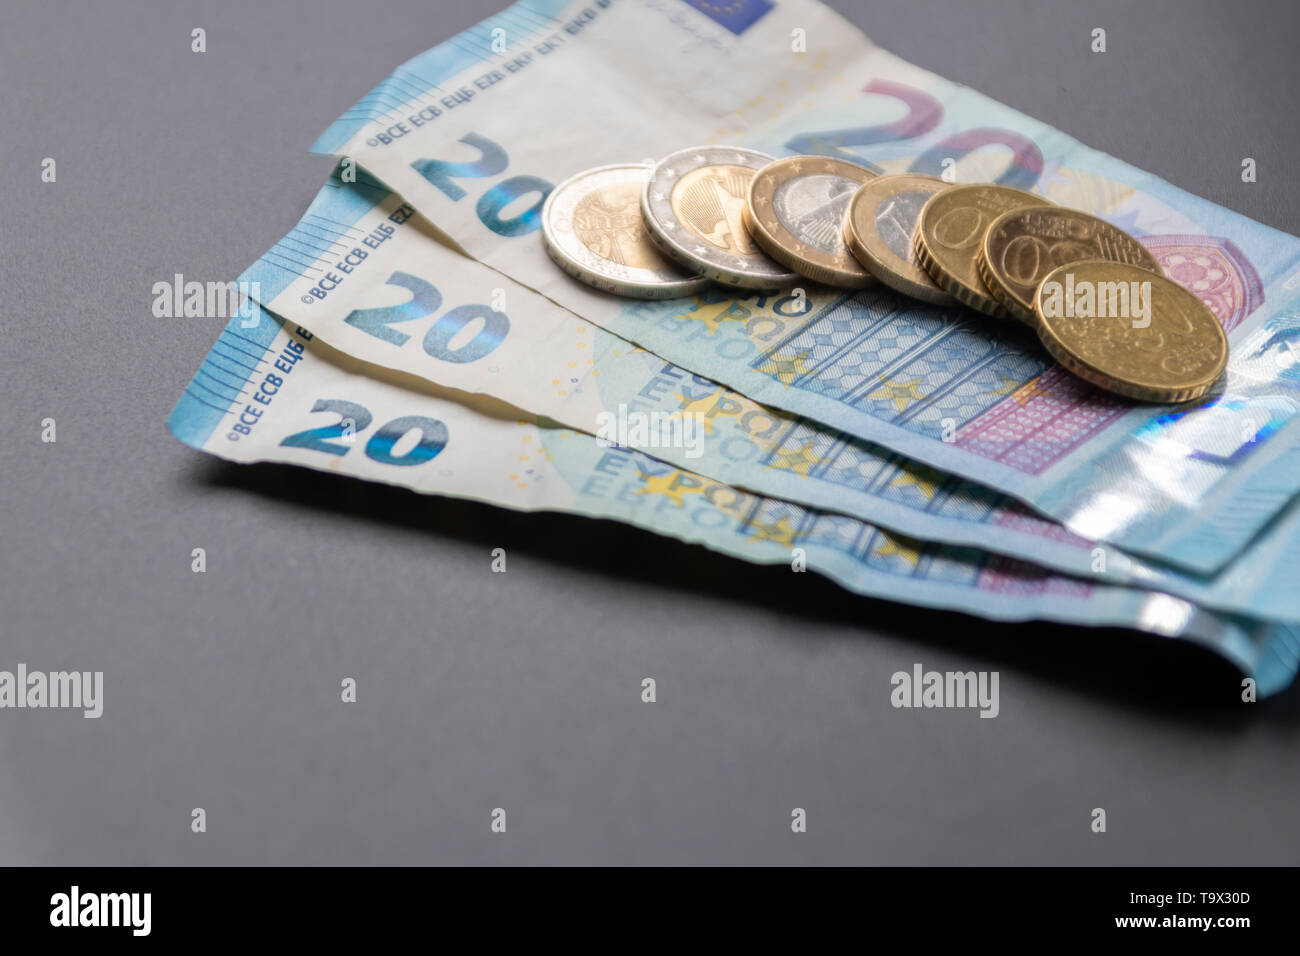 Una pila di banconote da 20 euro con 2 monete da euro, 1 monete da euro e 50 cent è pronta per il pagamento, in contanti europei o in tasca per investimenti privati Foto Stock